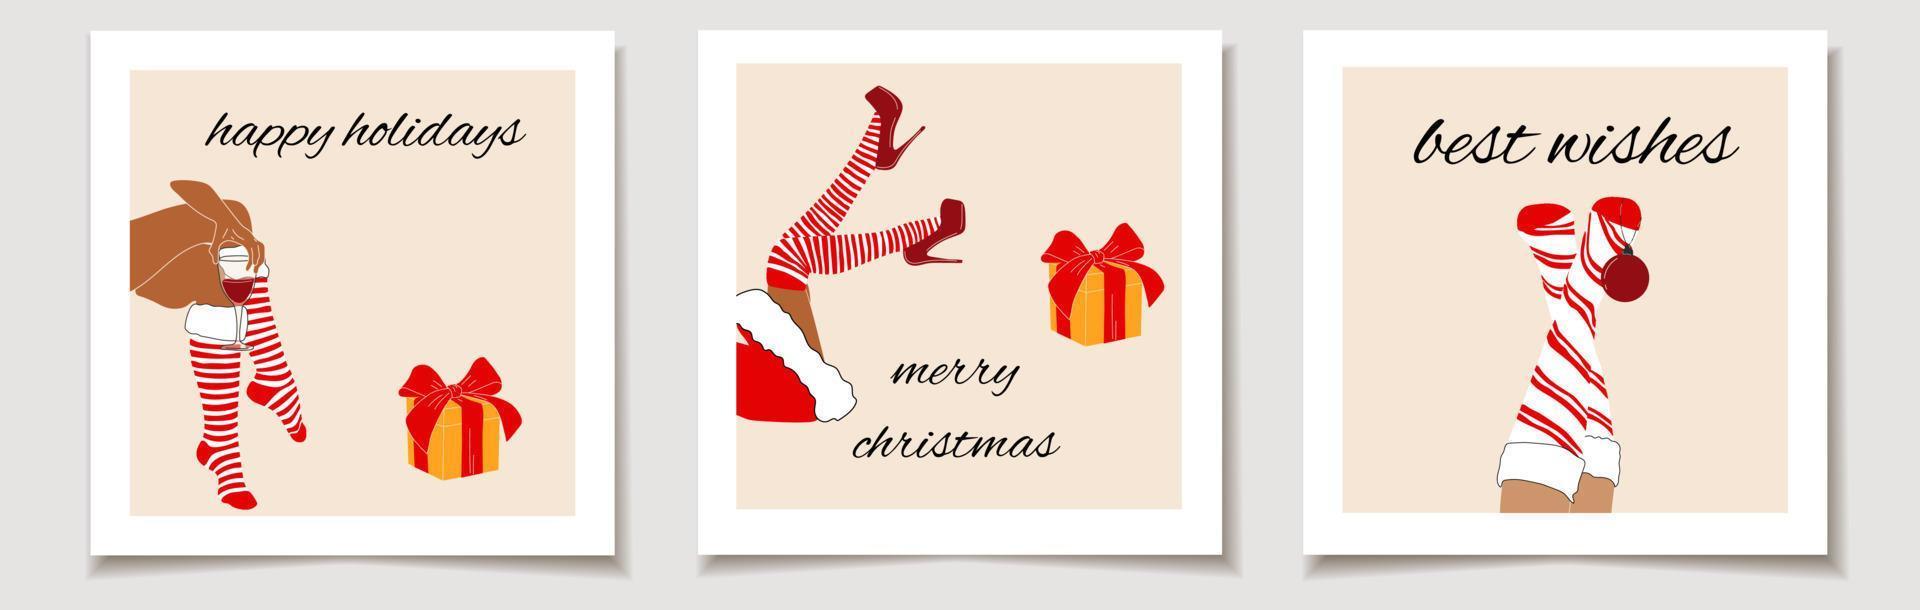 vector de navidad tarjeta de regalo o etiqueta juego de navidad de tres piernas de mujer santa con bola de navidad, regalo y vino. letras de feliz navidad, mejores deseos.